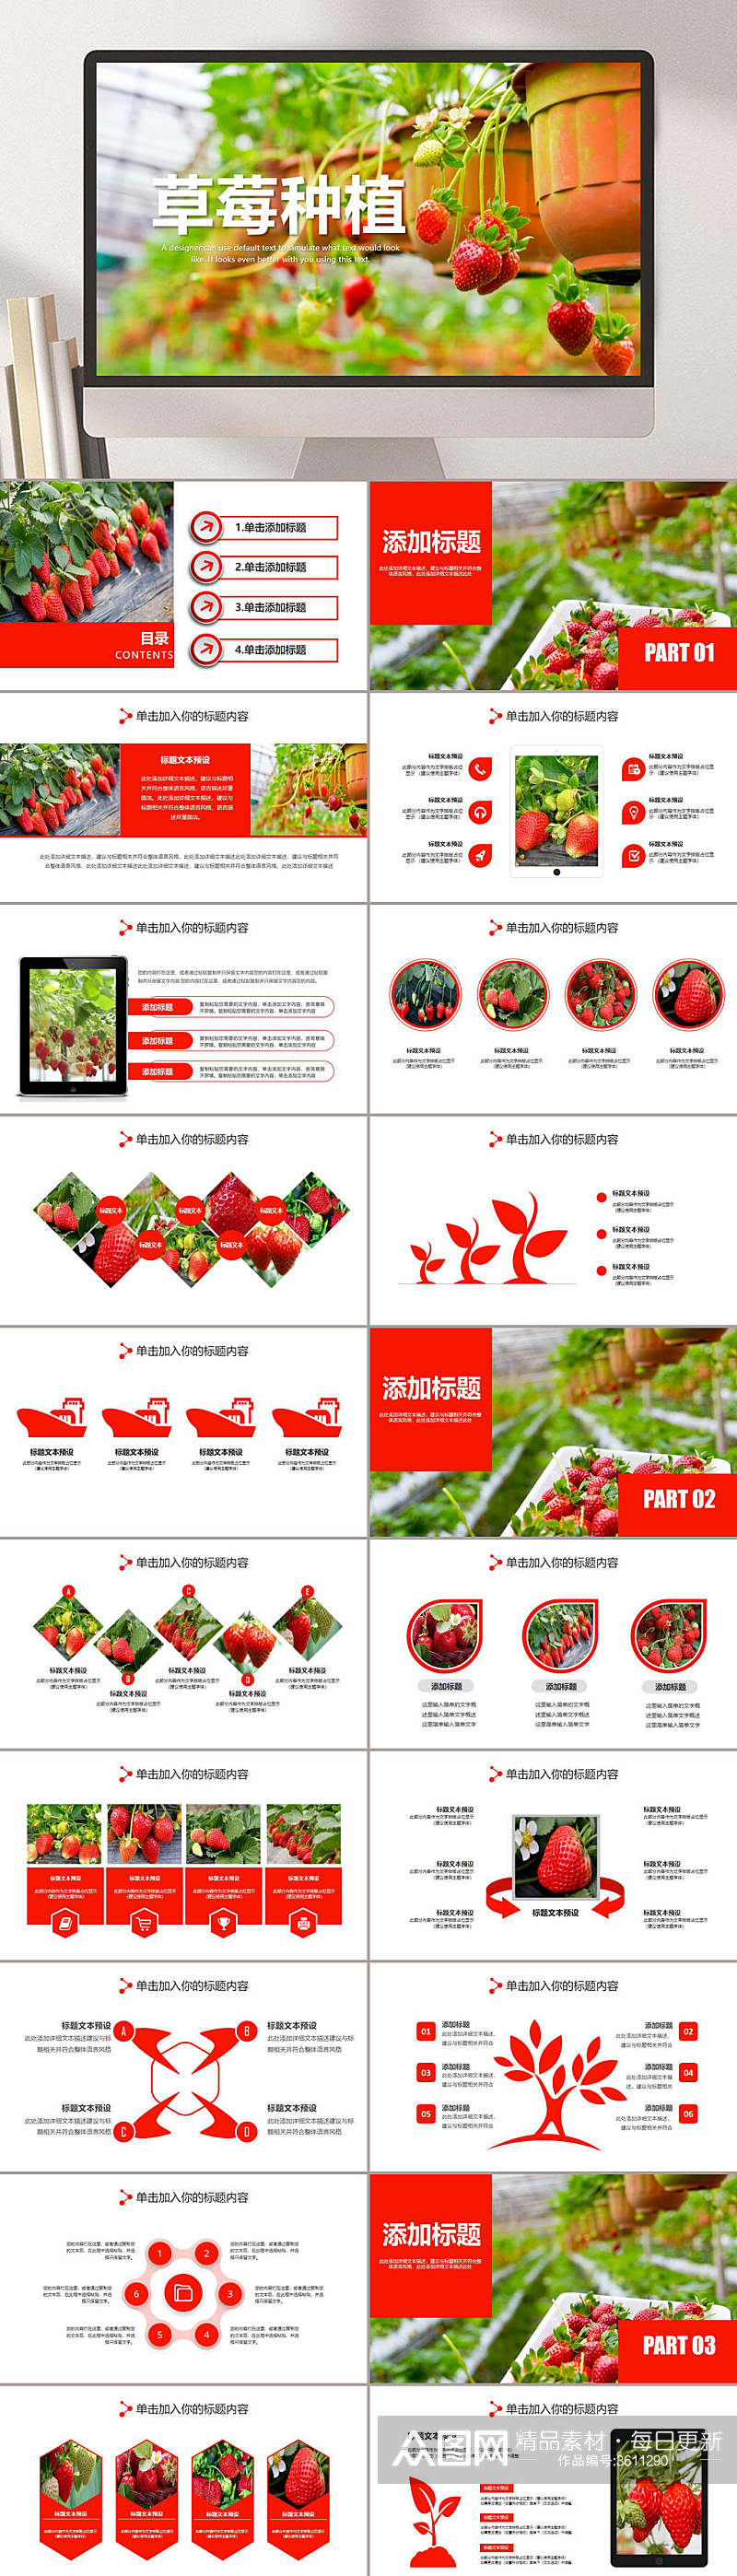 草莓种植PPT素材